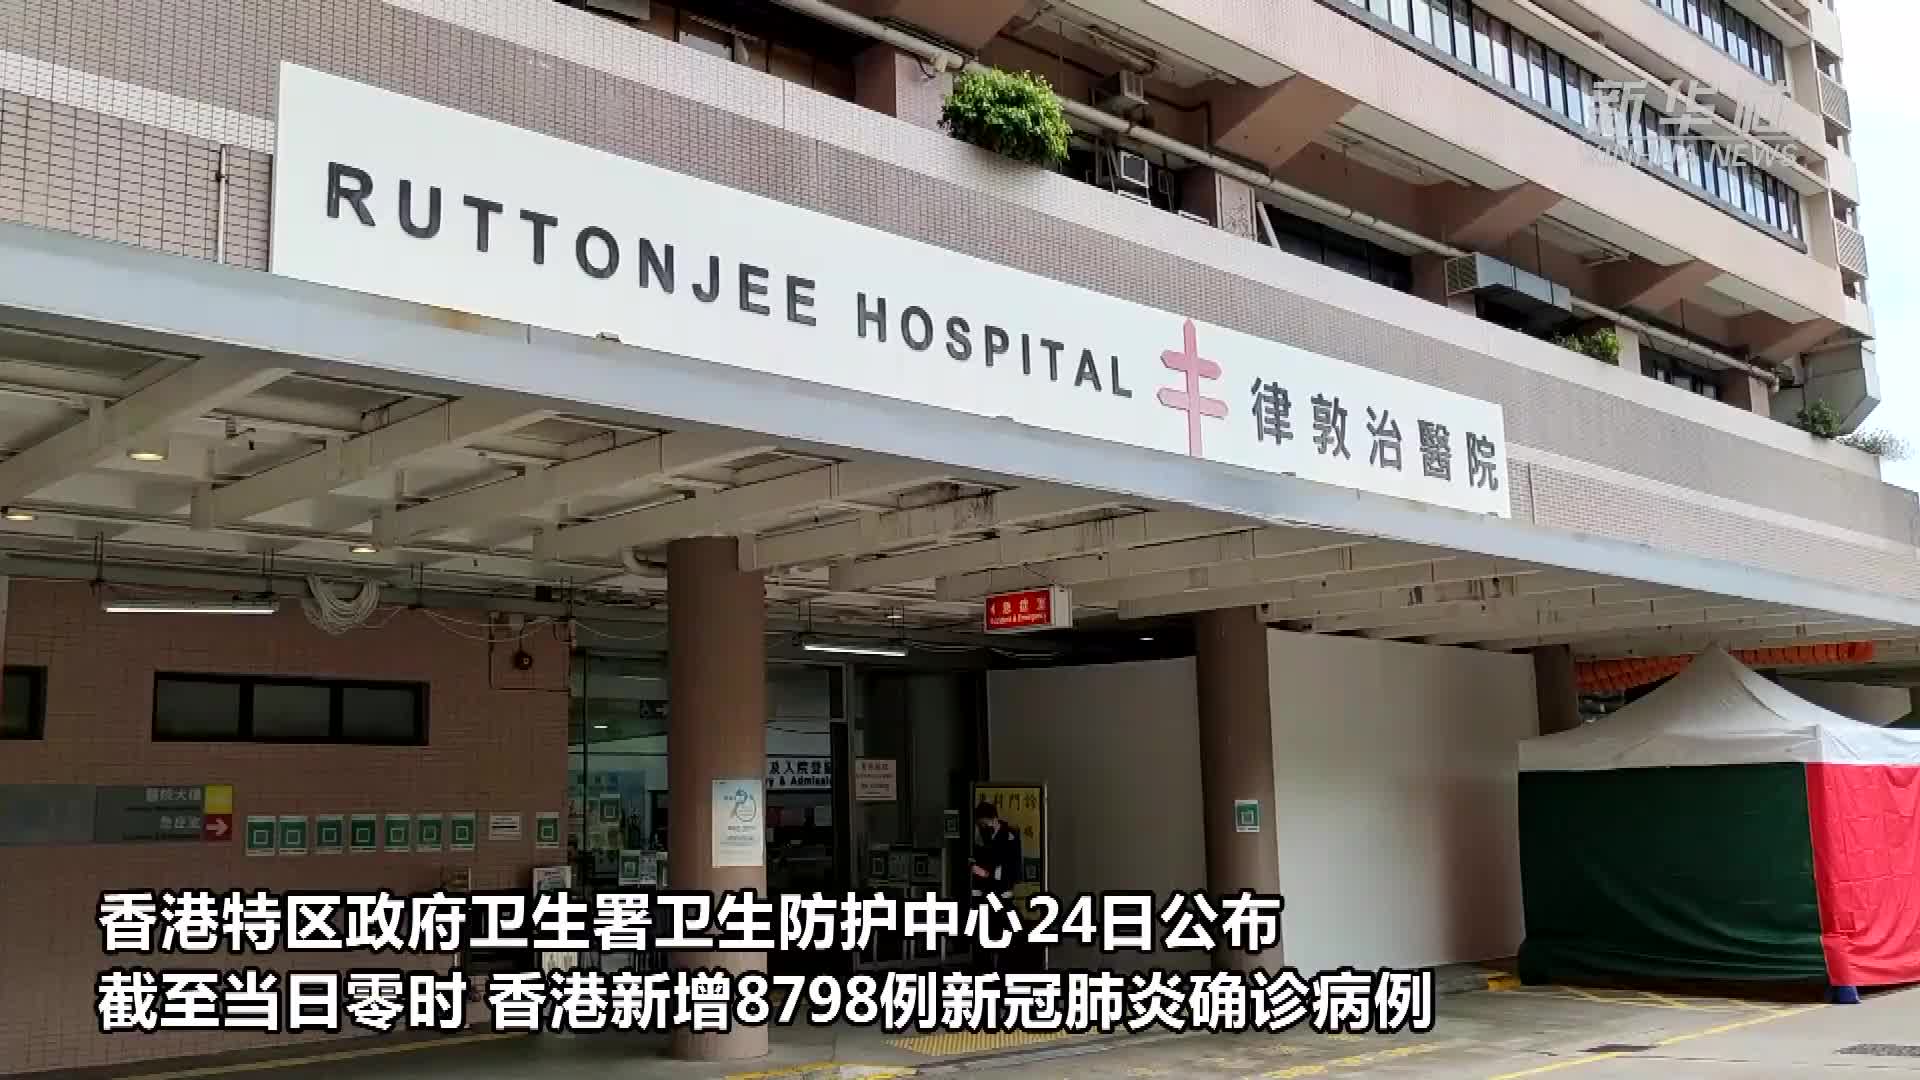 香港新冠肺炎图片